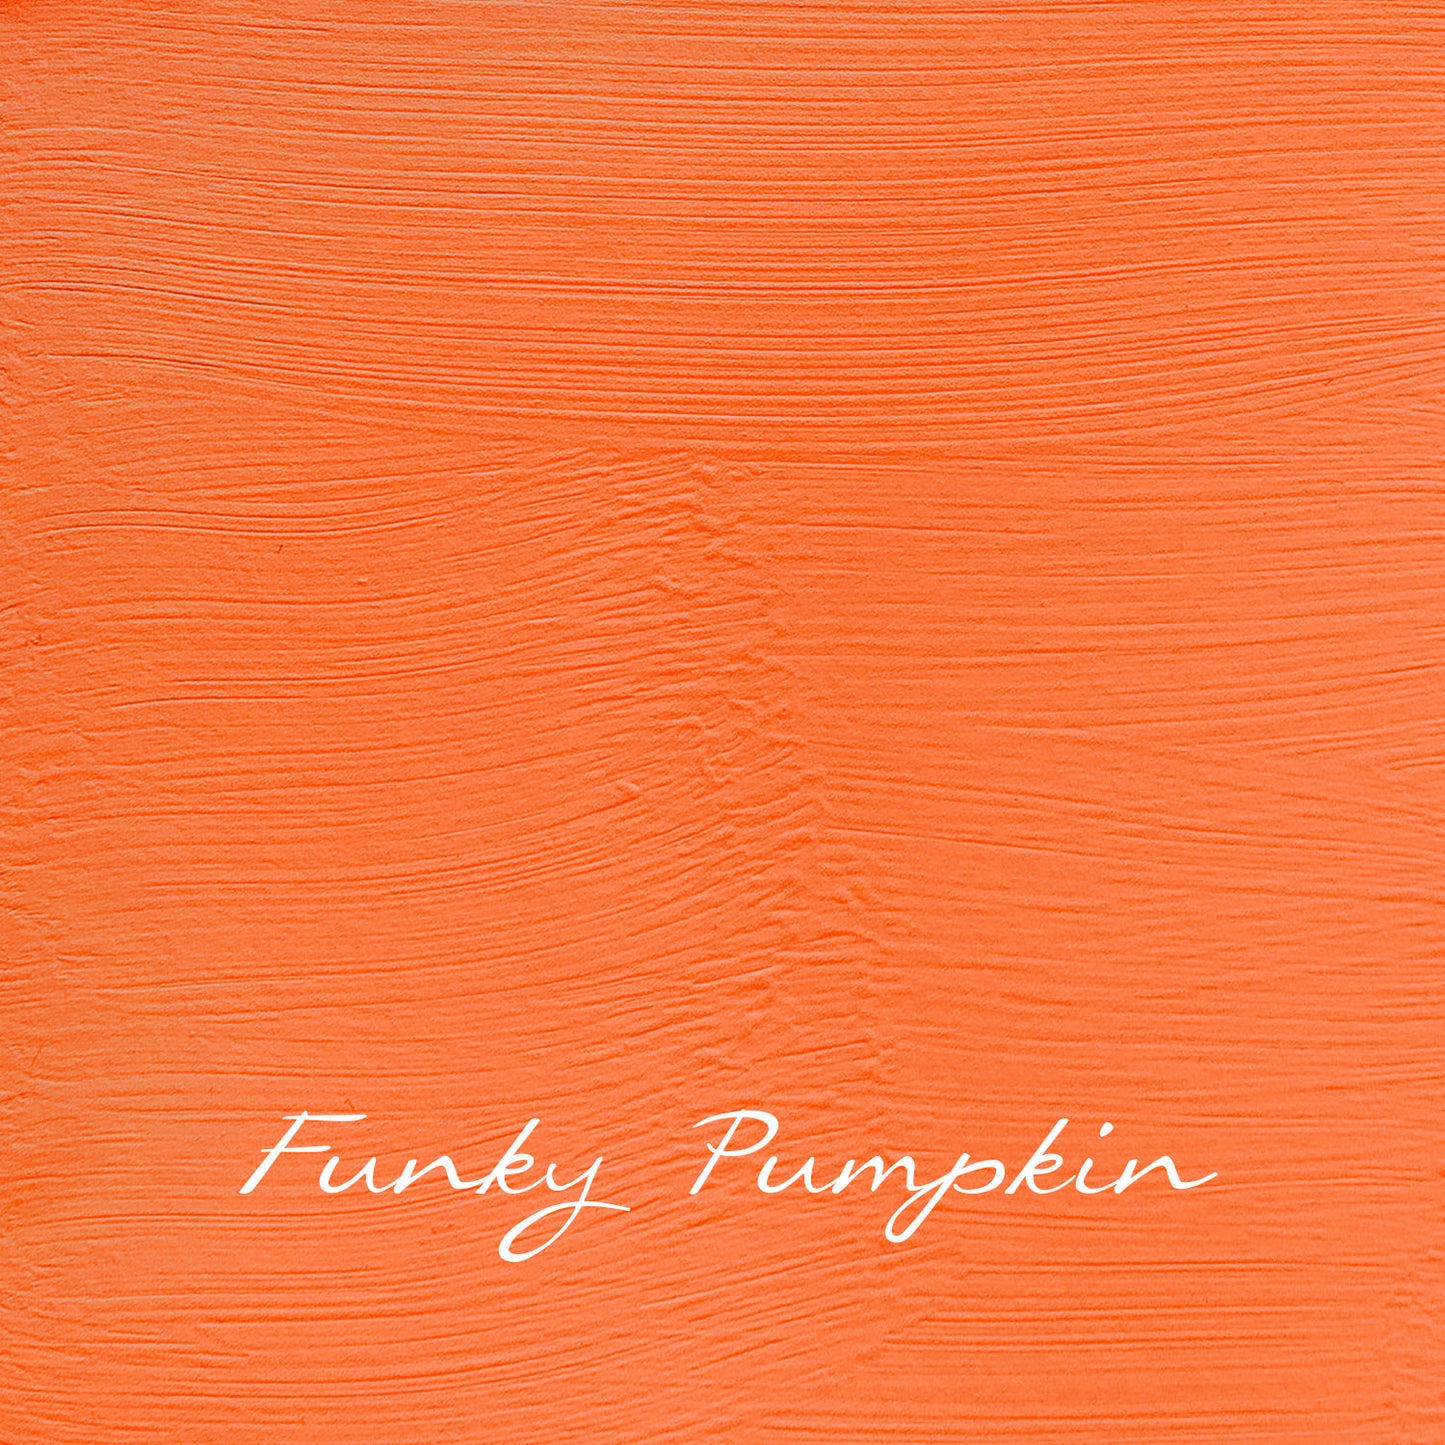 Funky Pumpkin - Vintage